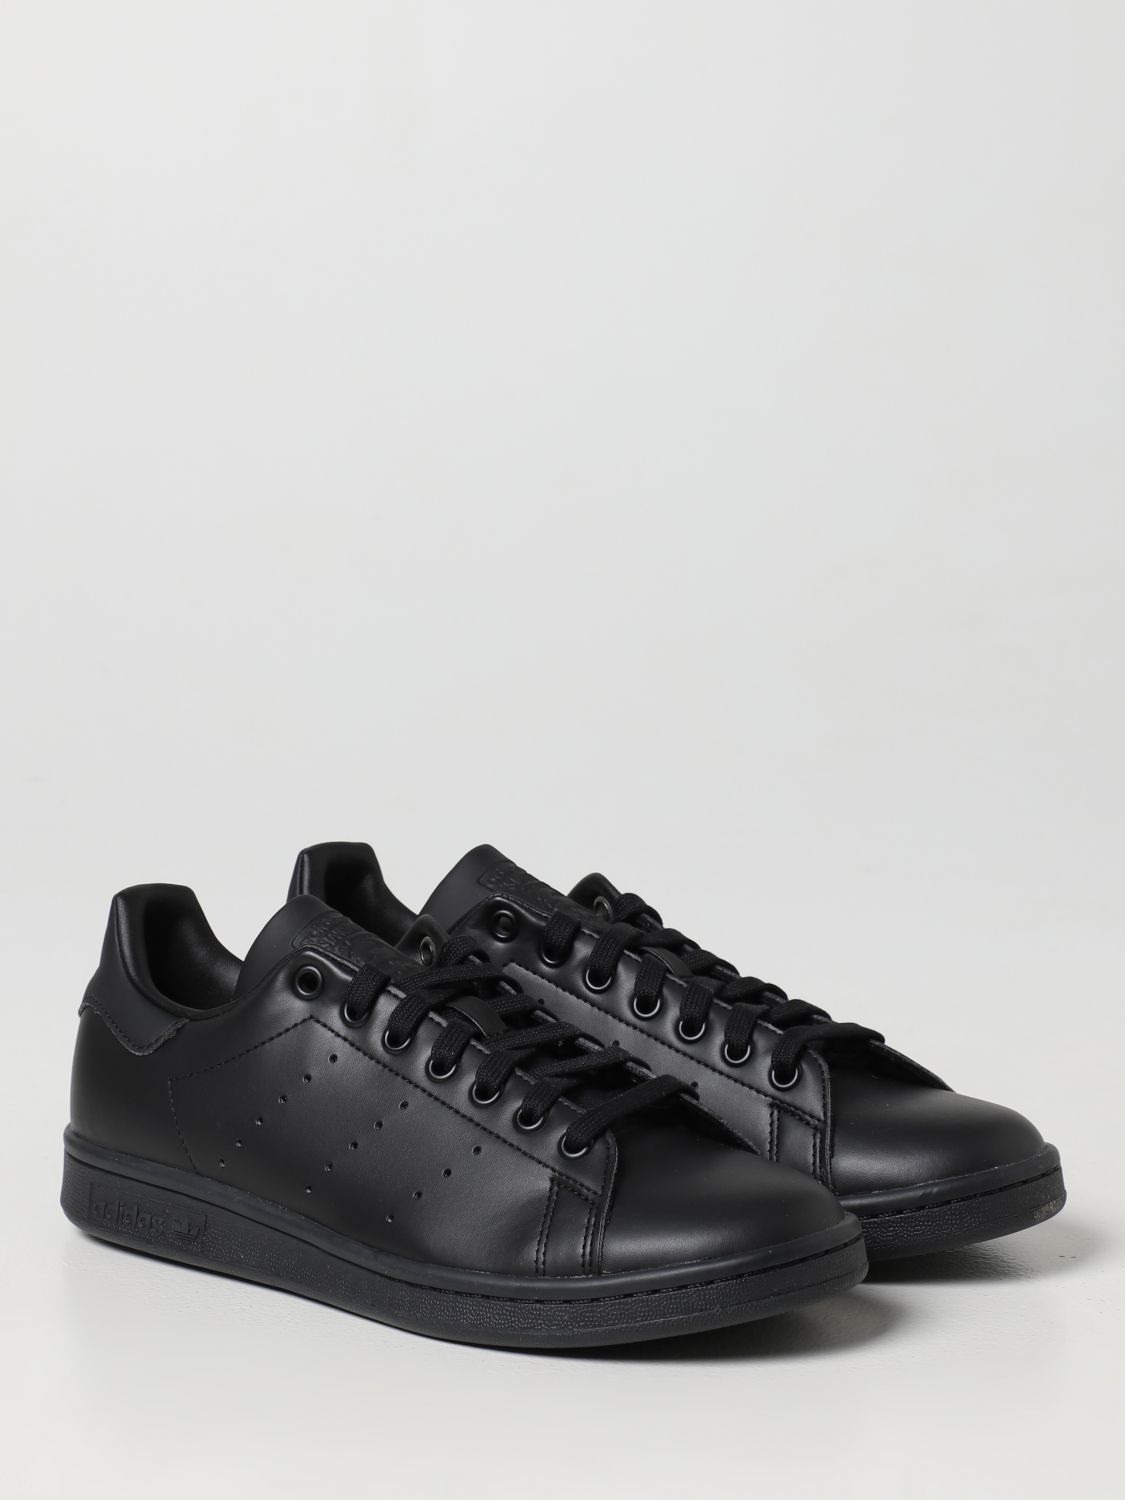 ADIDAS ORIGINALS: Zapatillas hombre, Negro | Zapatillas Adidas Originals FX5499 en línea en